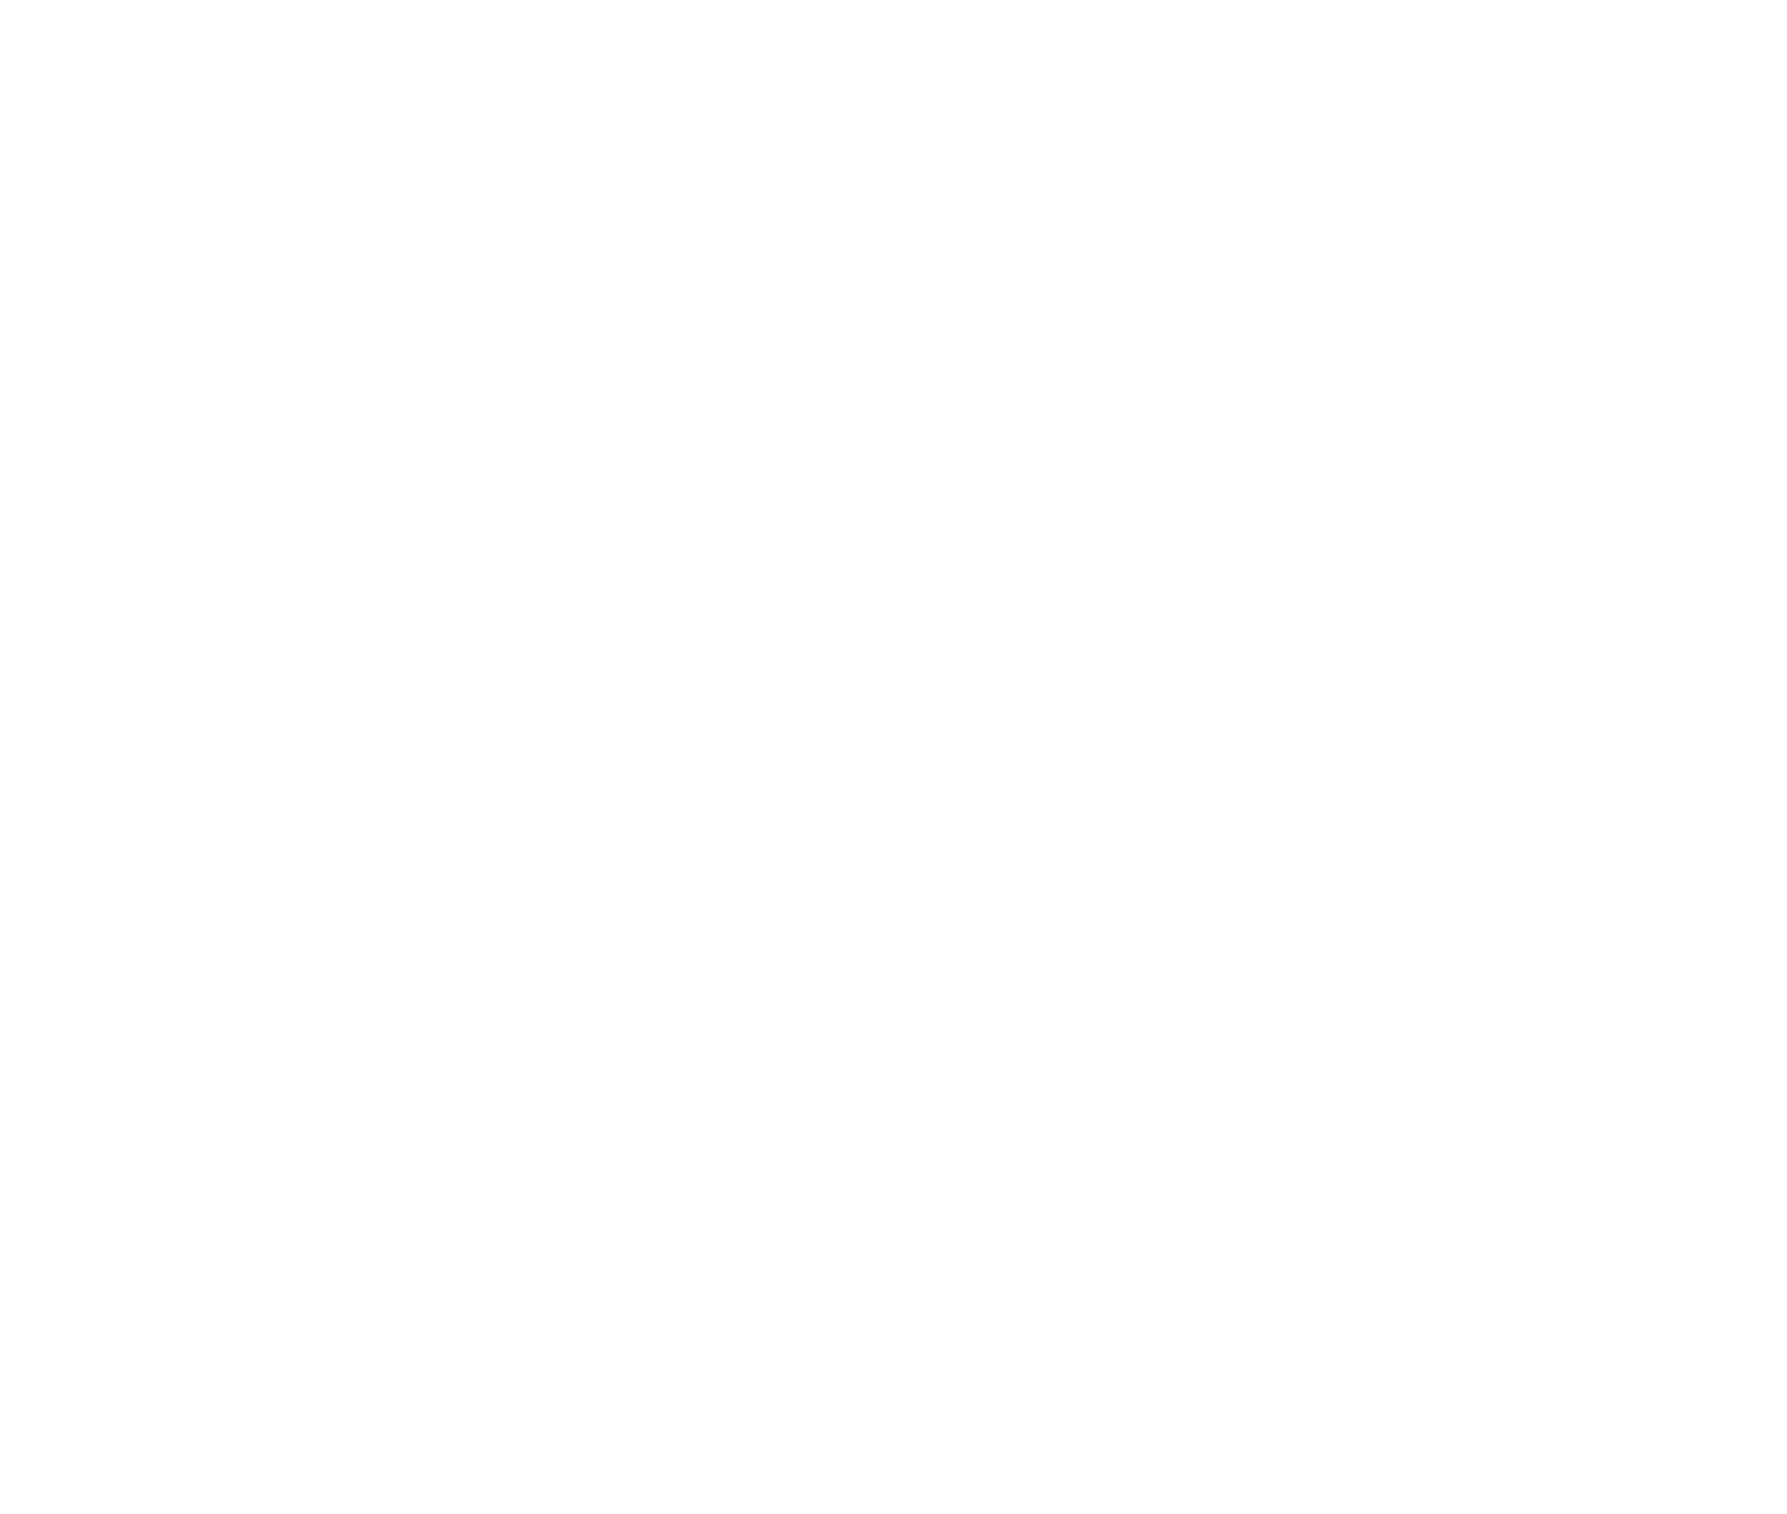 K+K Hotels Logo